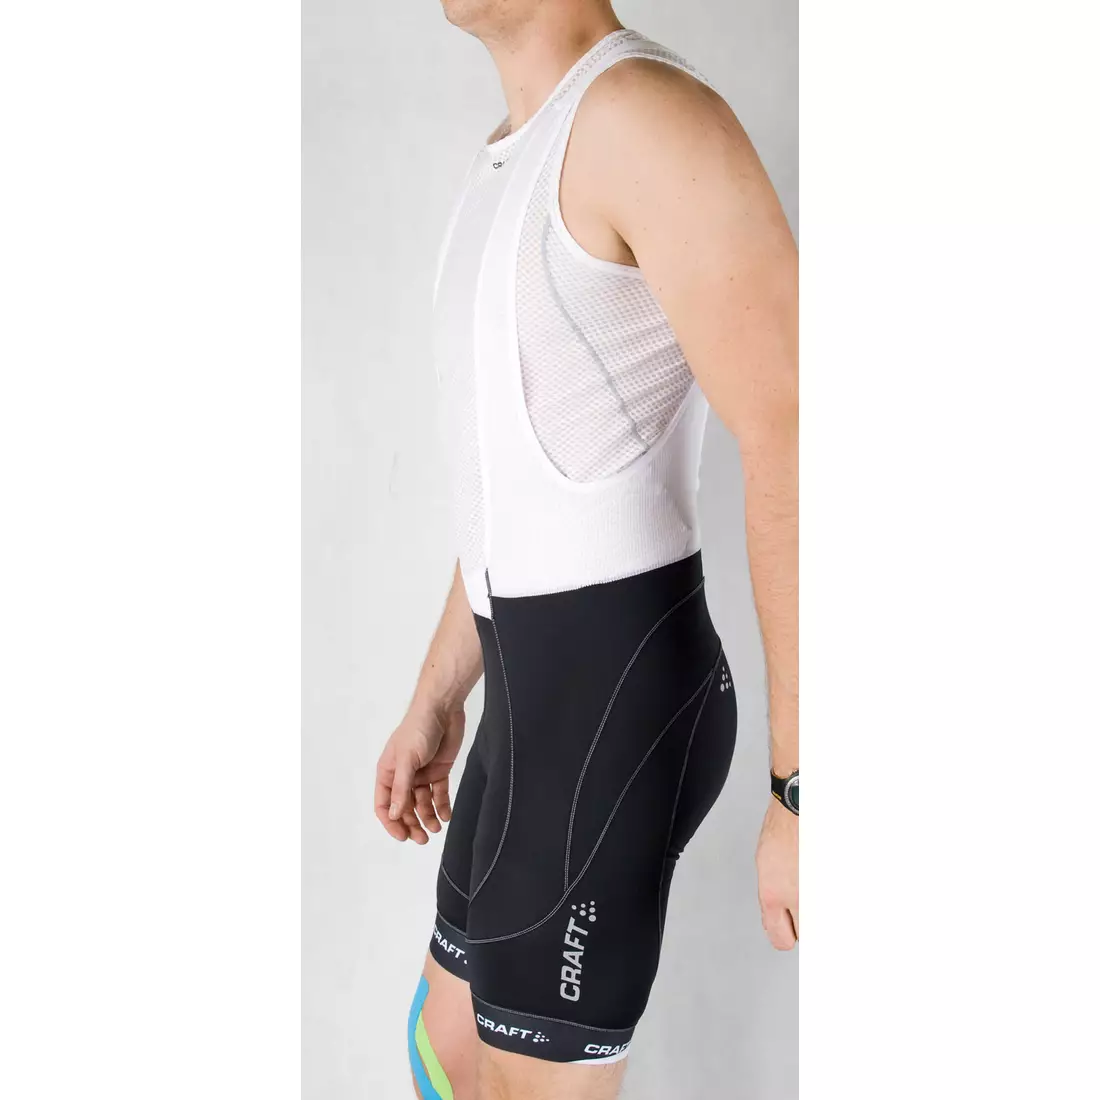 Pantaloni scurți cu bretele CRAFT Elite Bike Bib Short pentru bărbați 1900004-9900